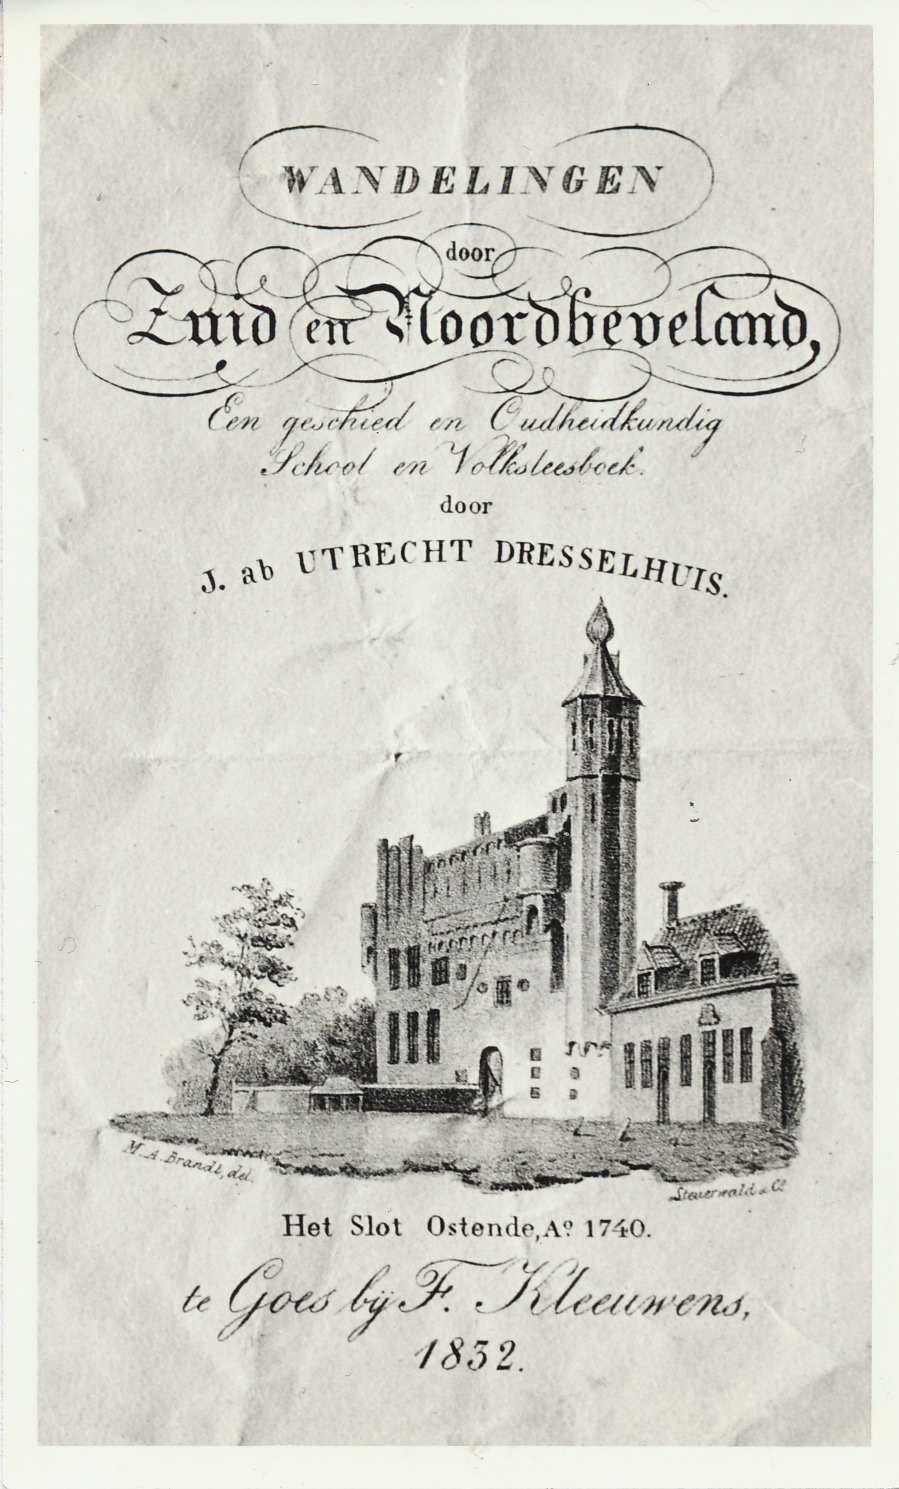  Titelblad van Wandelingen door Zuid- en Noord-Beveland, J. ab Utrecht Dresselhuis, Goes 1832. GAG.HB.